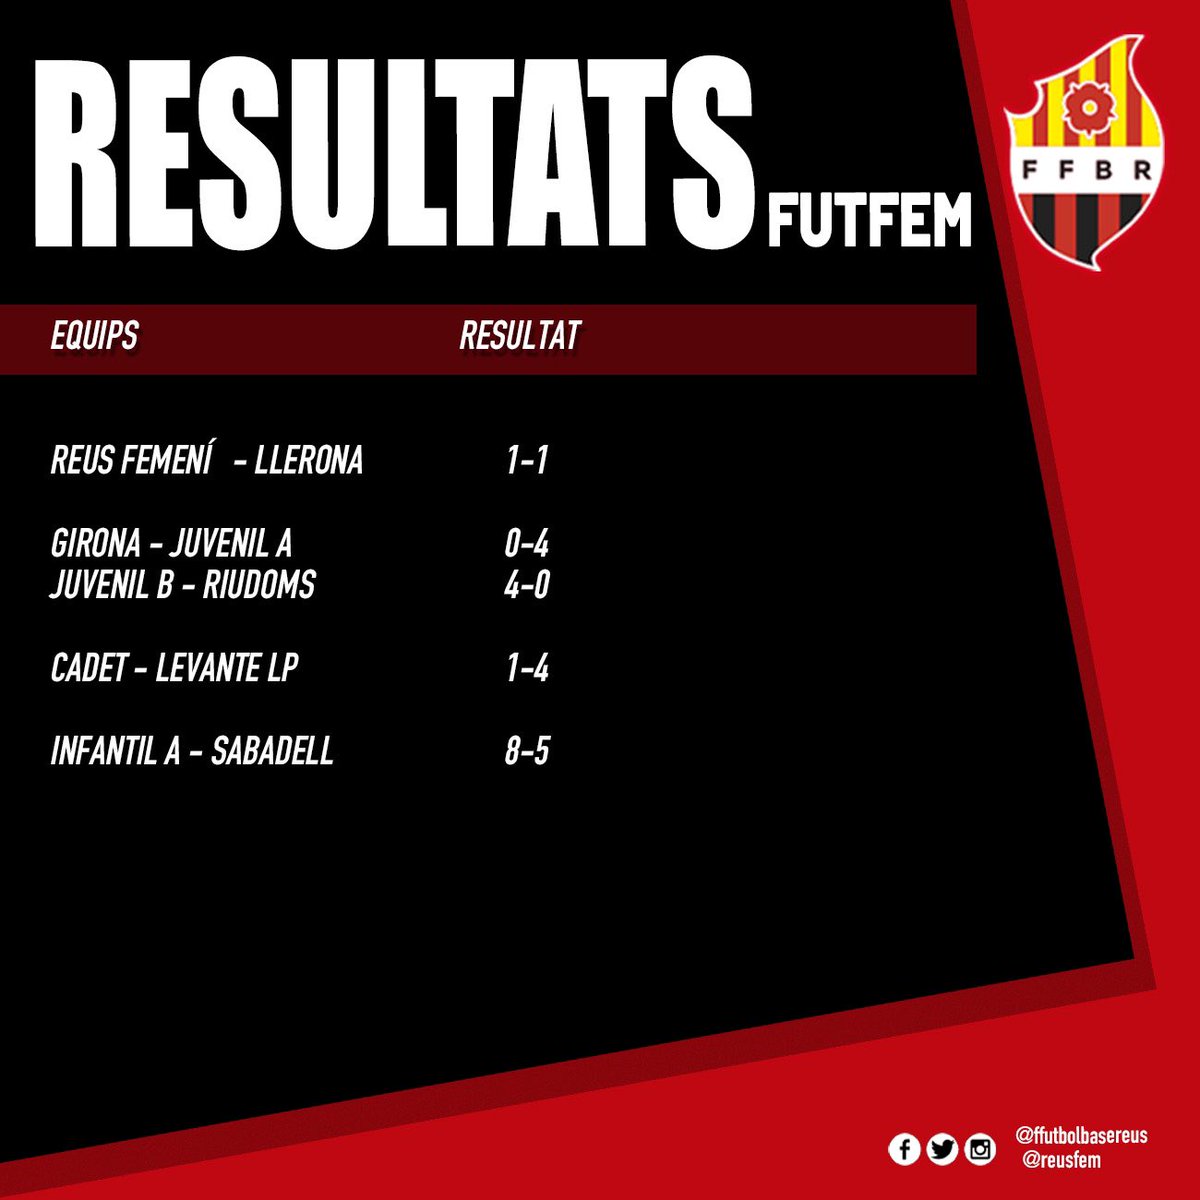 Resultats dels partits del futbol roig-i-negre d’aquest cap de setmana | 18 i 19 de maig #ffutbolbasereus #cfreusfem #reus #forçareus #reusfemení